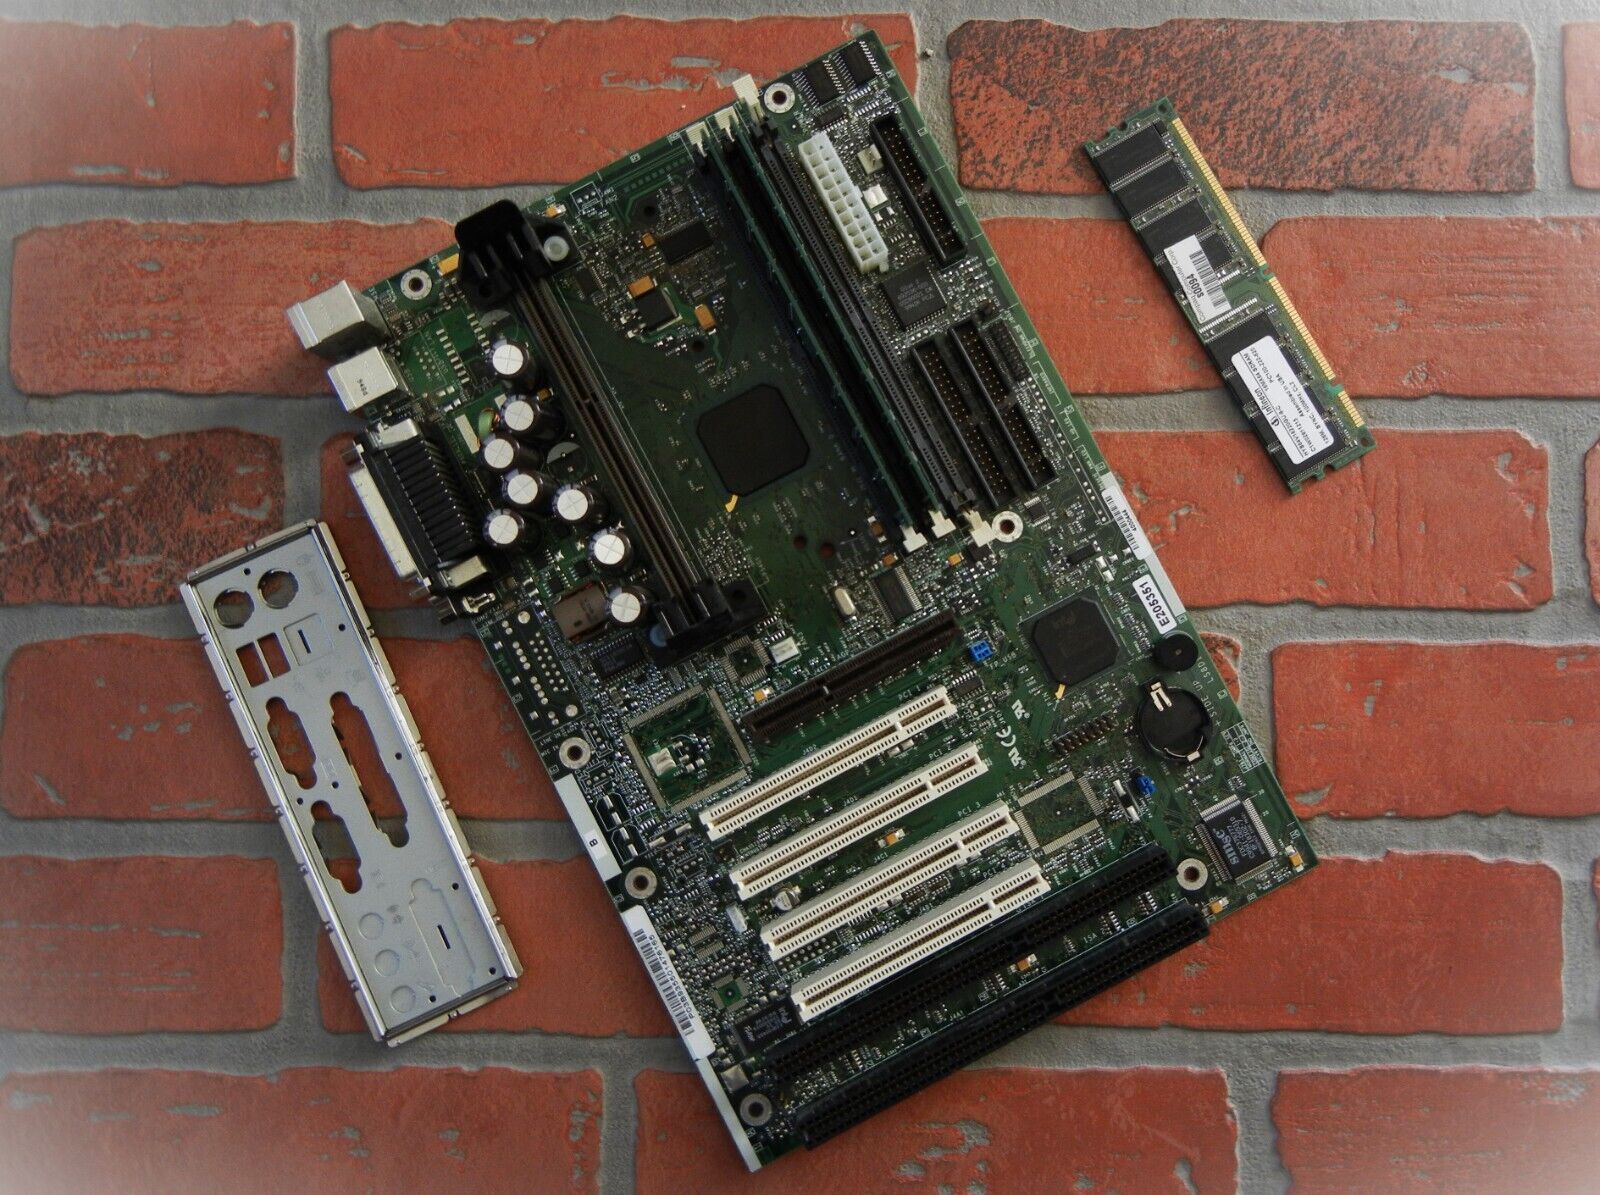 Intel Seattle SE440BX-3 Pentium 3 Slot 1 DELL Vintage MOTHERBOARD Geek PACKAGE